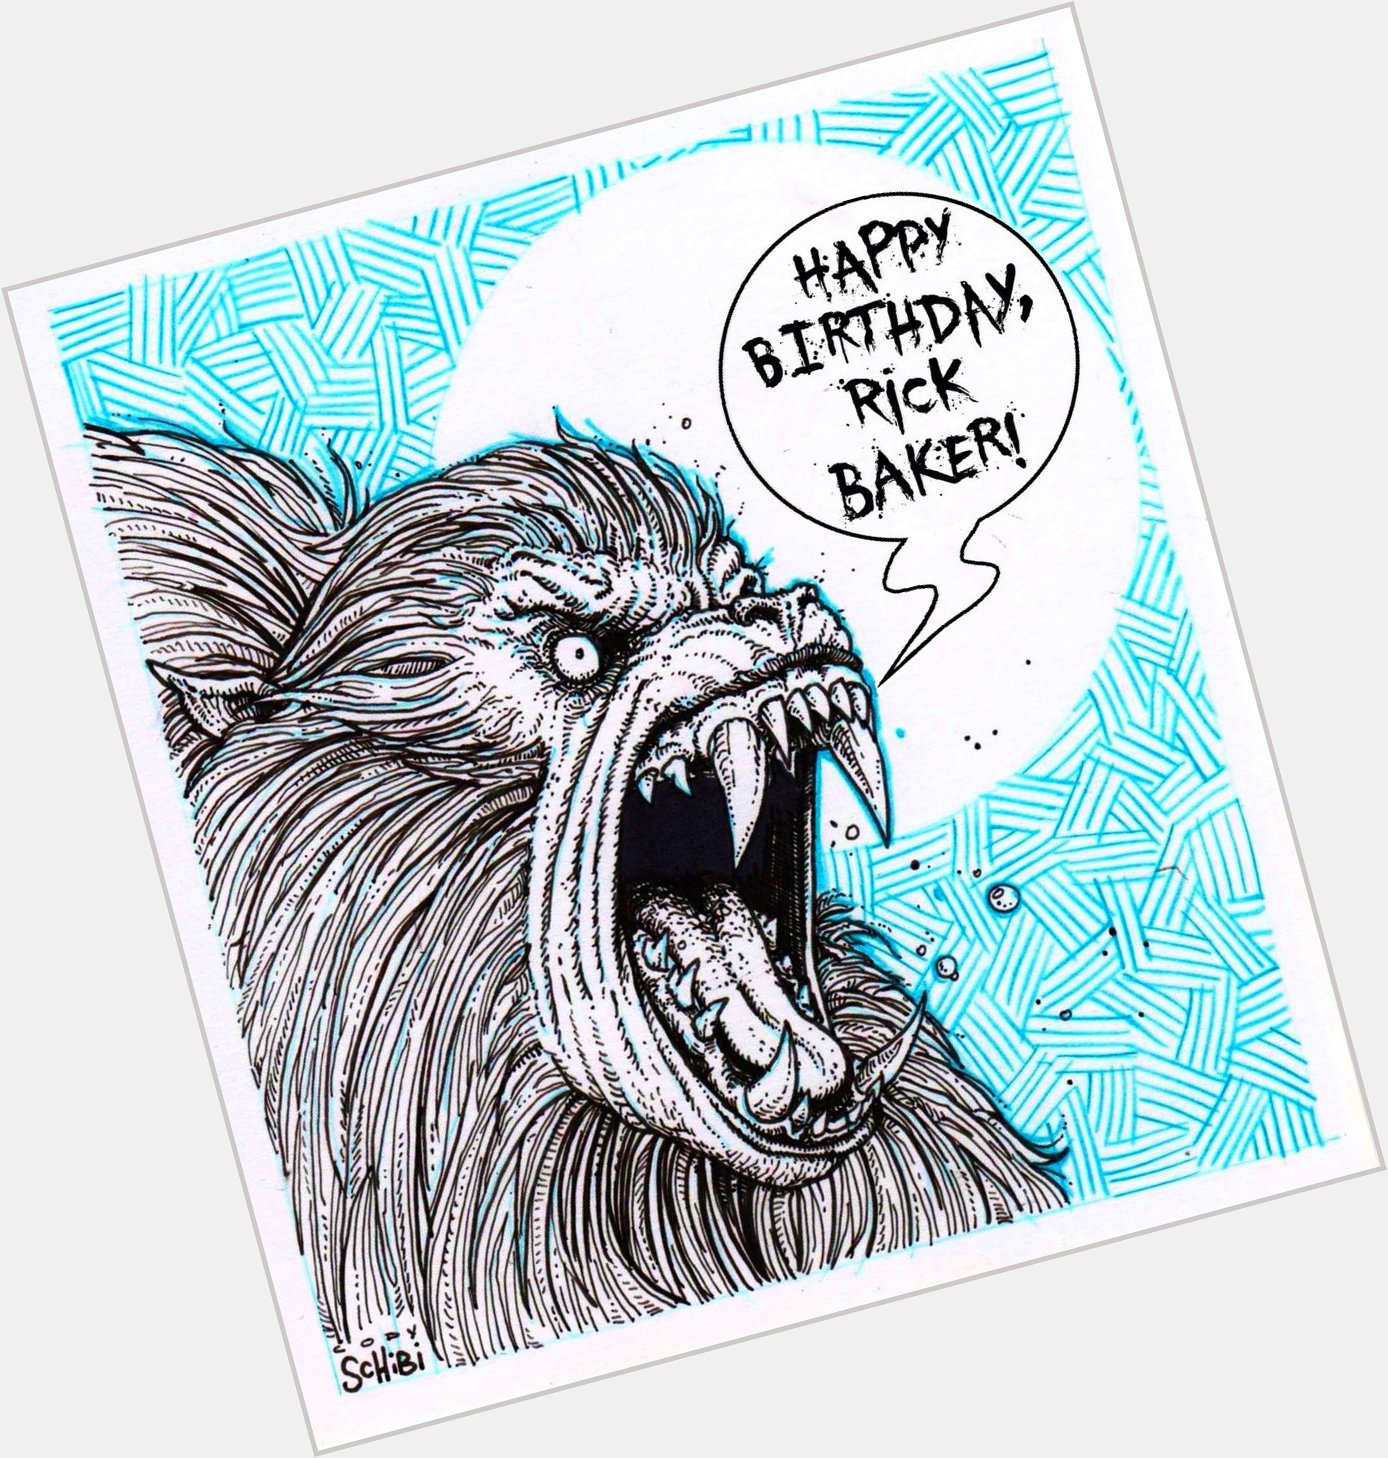 Happy Birthday to the brilliant Rick Baker!  